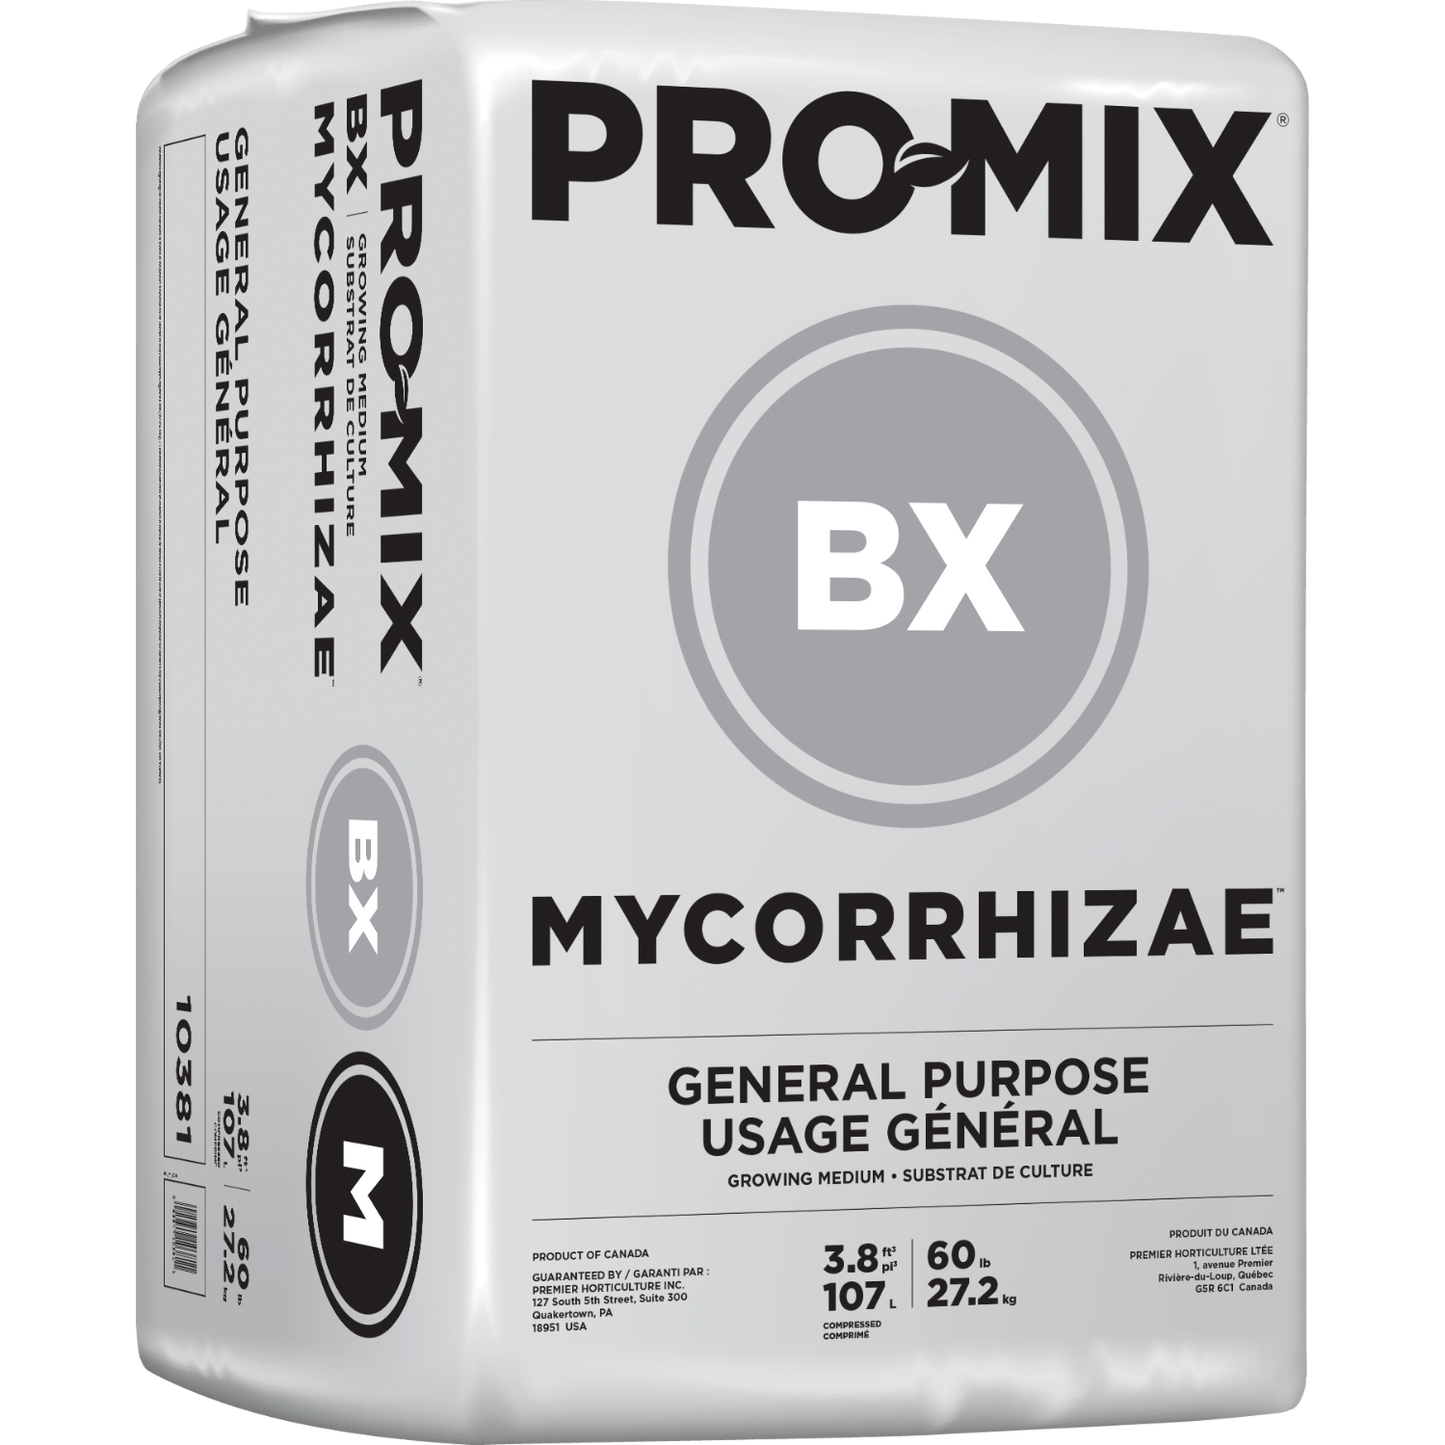 Pro-Mix BX Bale 3.8 CuFt w/myc *